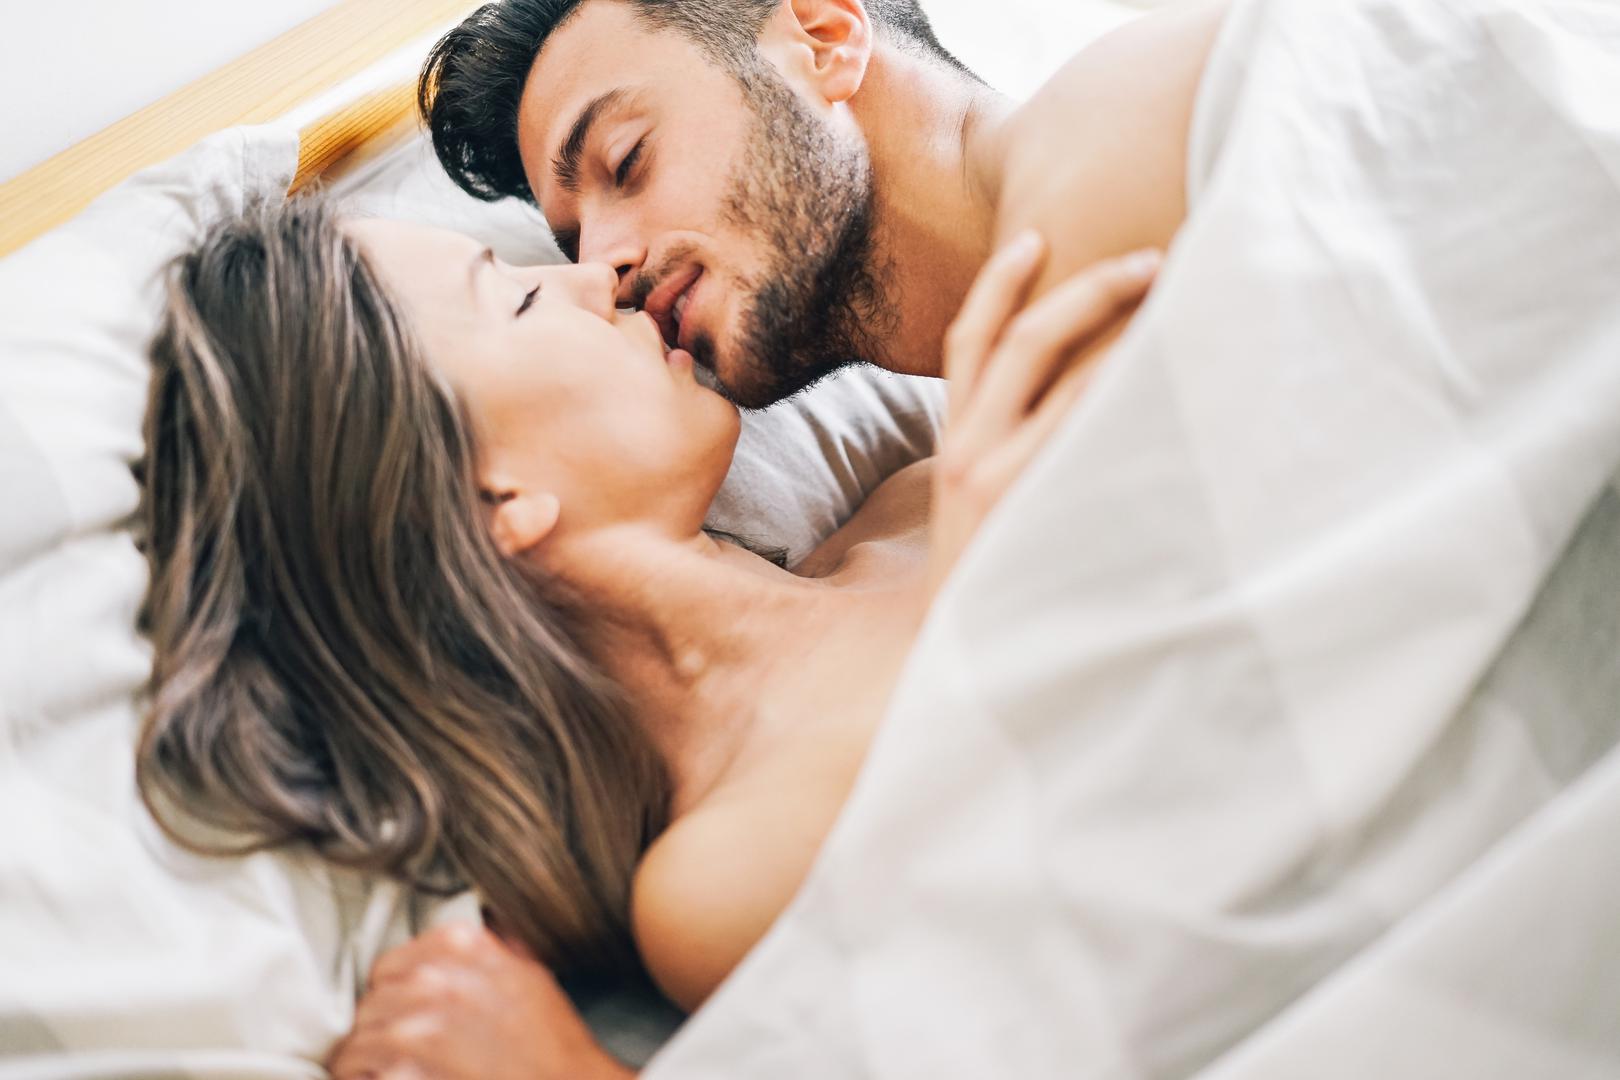 Međutim, povezanost seksa i drijemanja tu ne prestaje. Studija koju je provelo Sveučilište Michigan otkrila je da žene imaju jaču seksualnu želju ako dulje spavaju. Svaki sat drijemanja znači bi 14% veću vjerojatnost za seks!